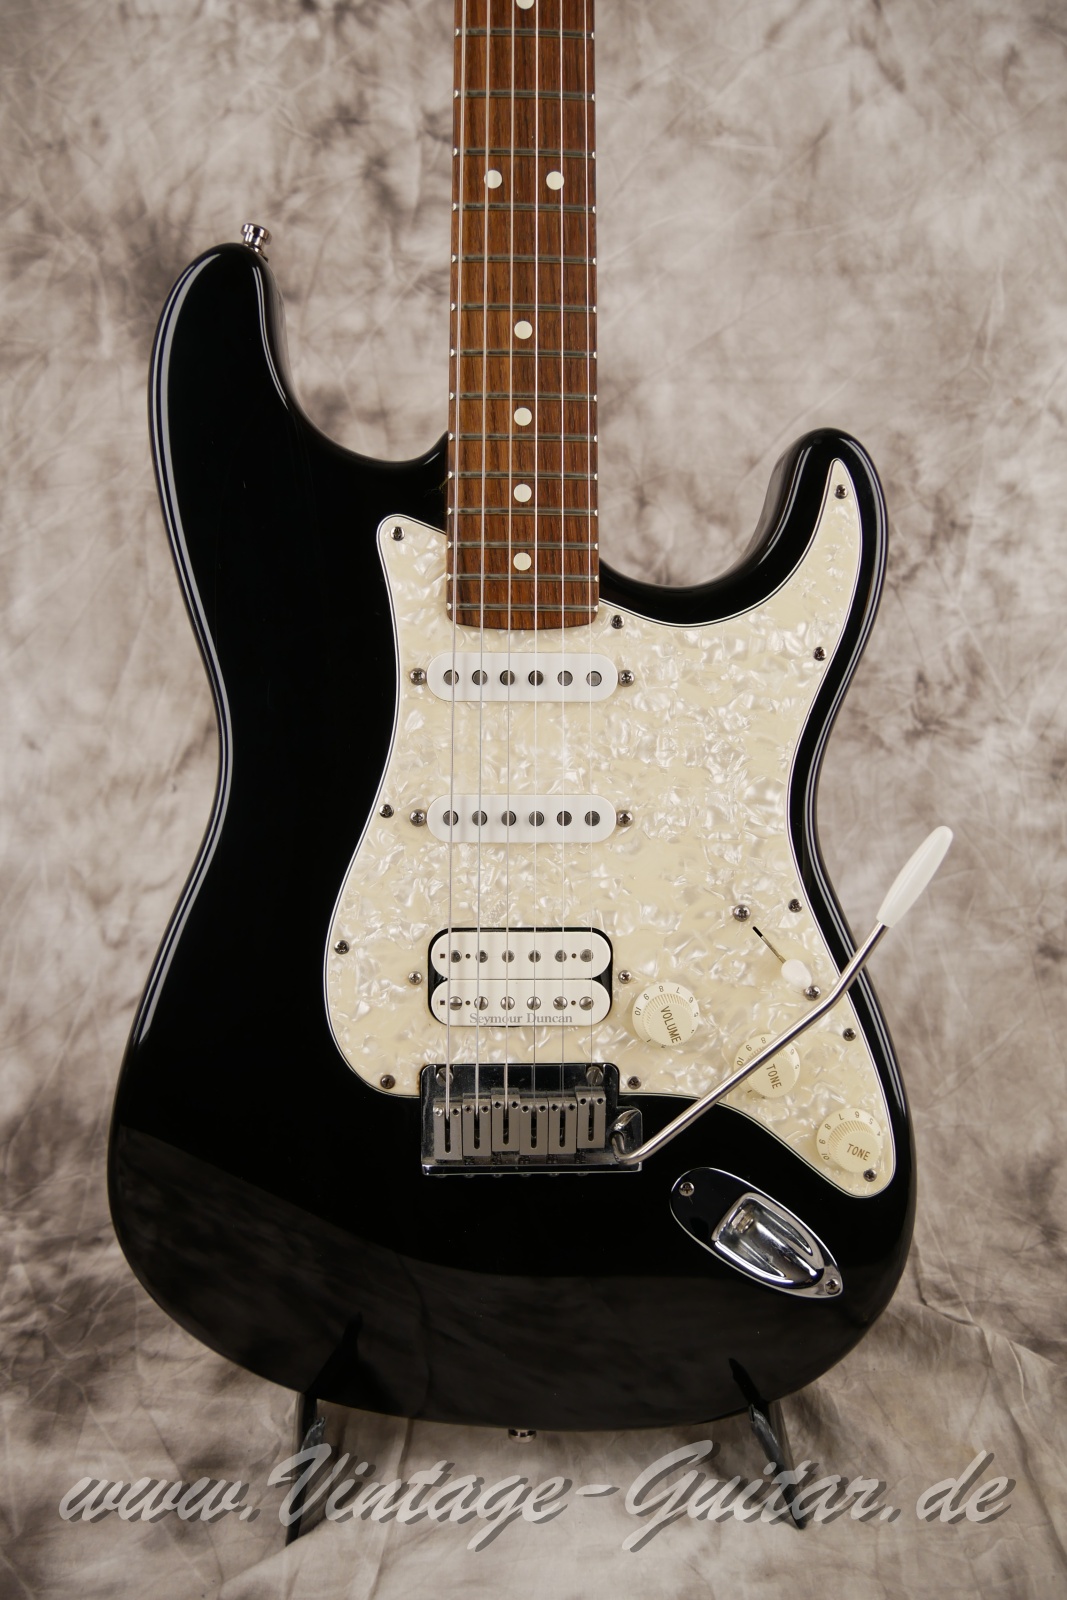 Fender_Stratocaster_US_Lonestar_1997_original_case_black_humbucker-007.jpg